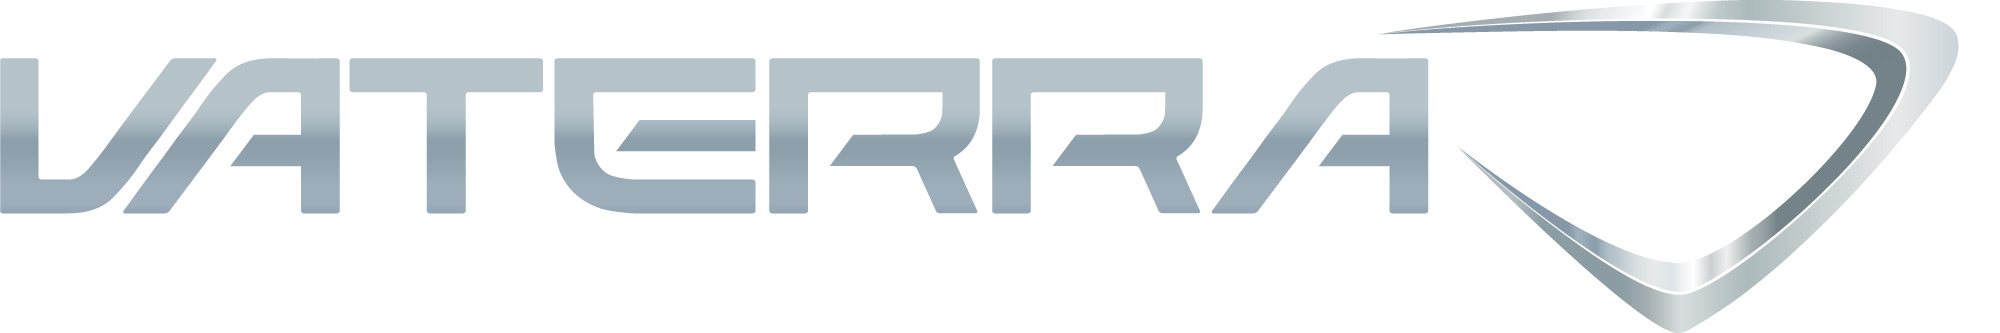 VTR_Logo_3D_Gray_Hor.jpg